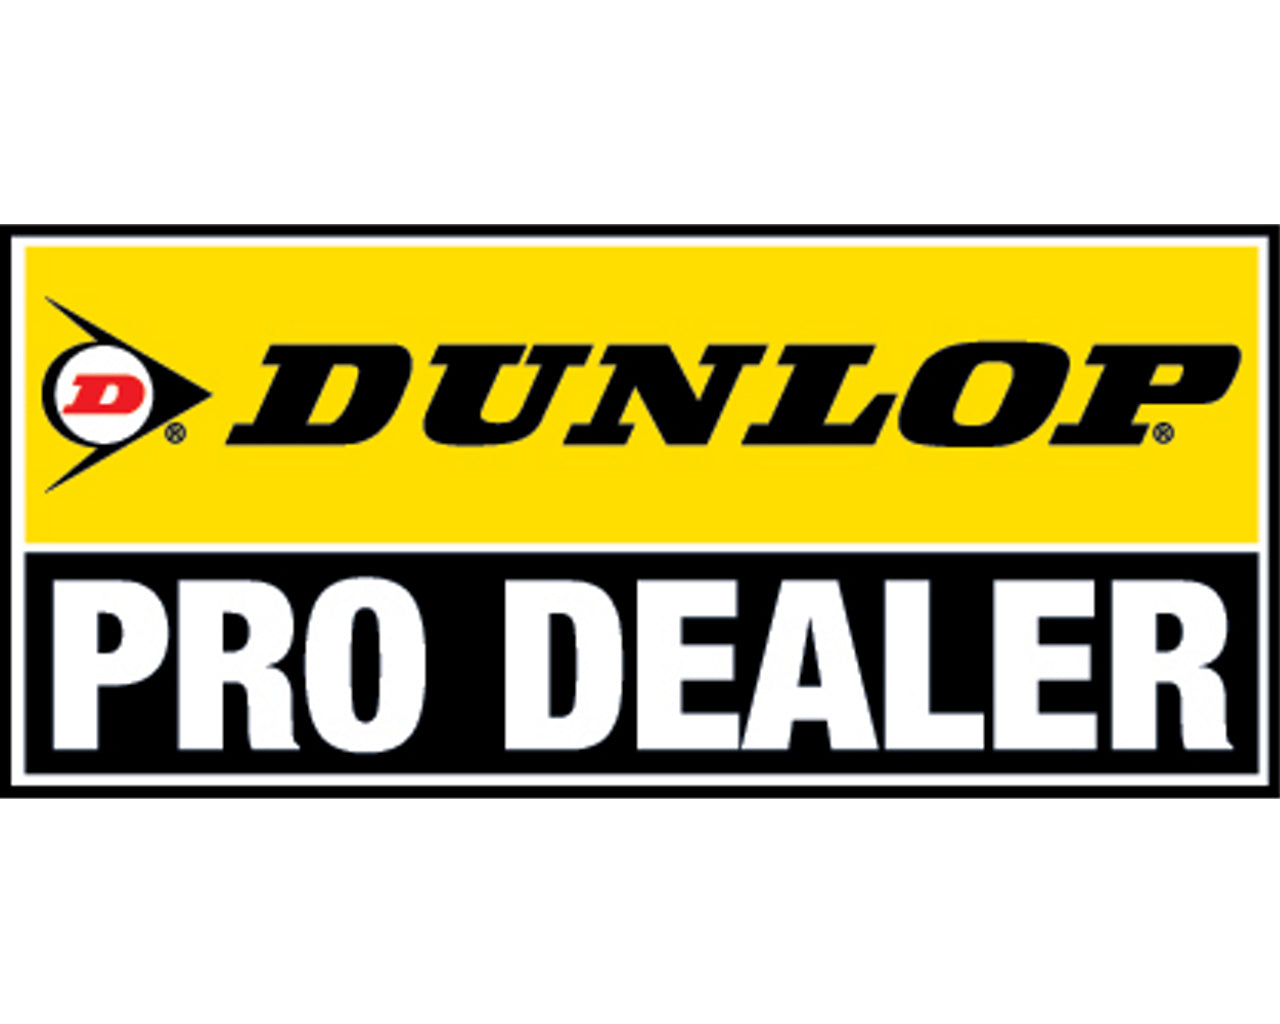 Dunlop 100/90-19 Geomax MX53 Off-Road MX Tire Rear 873-0657